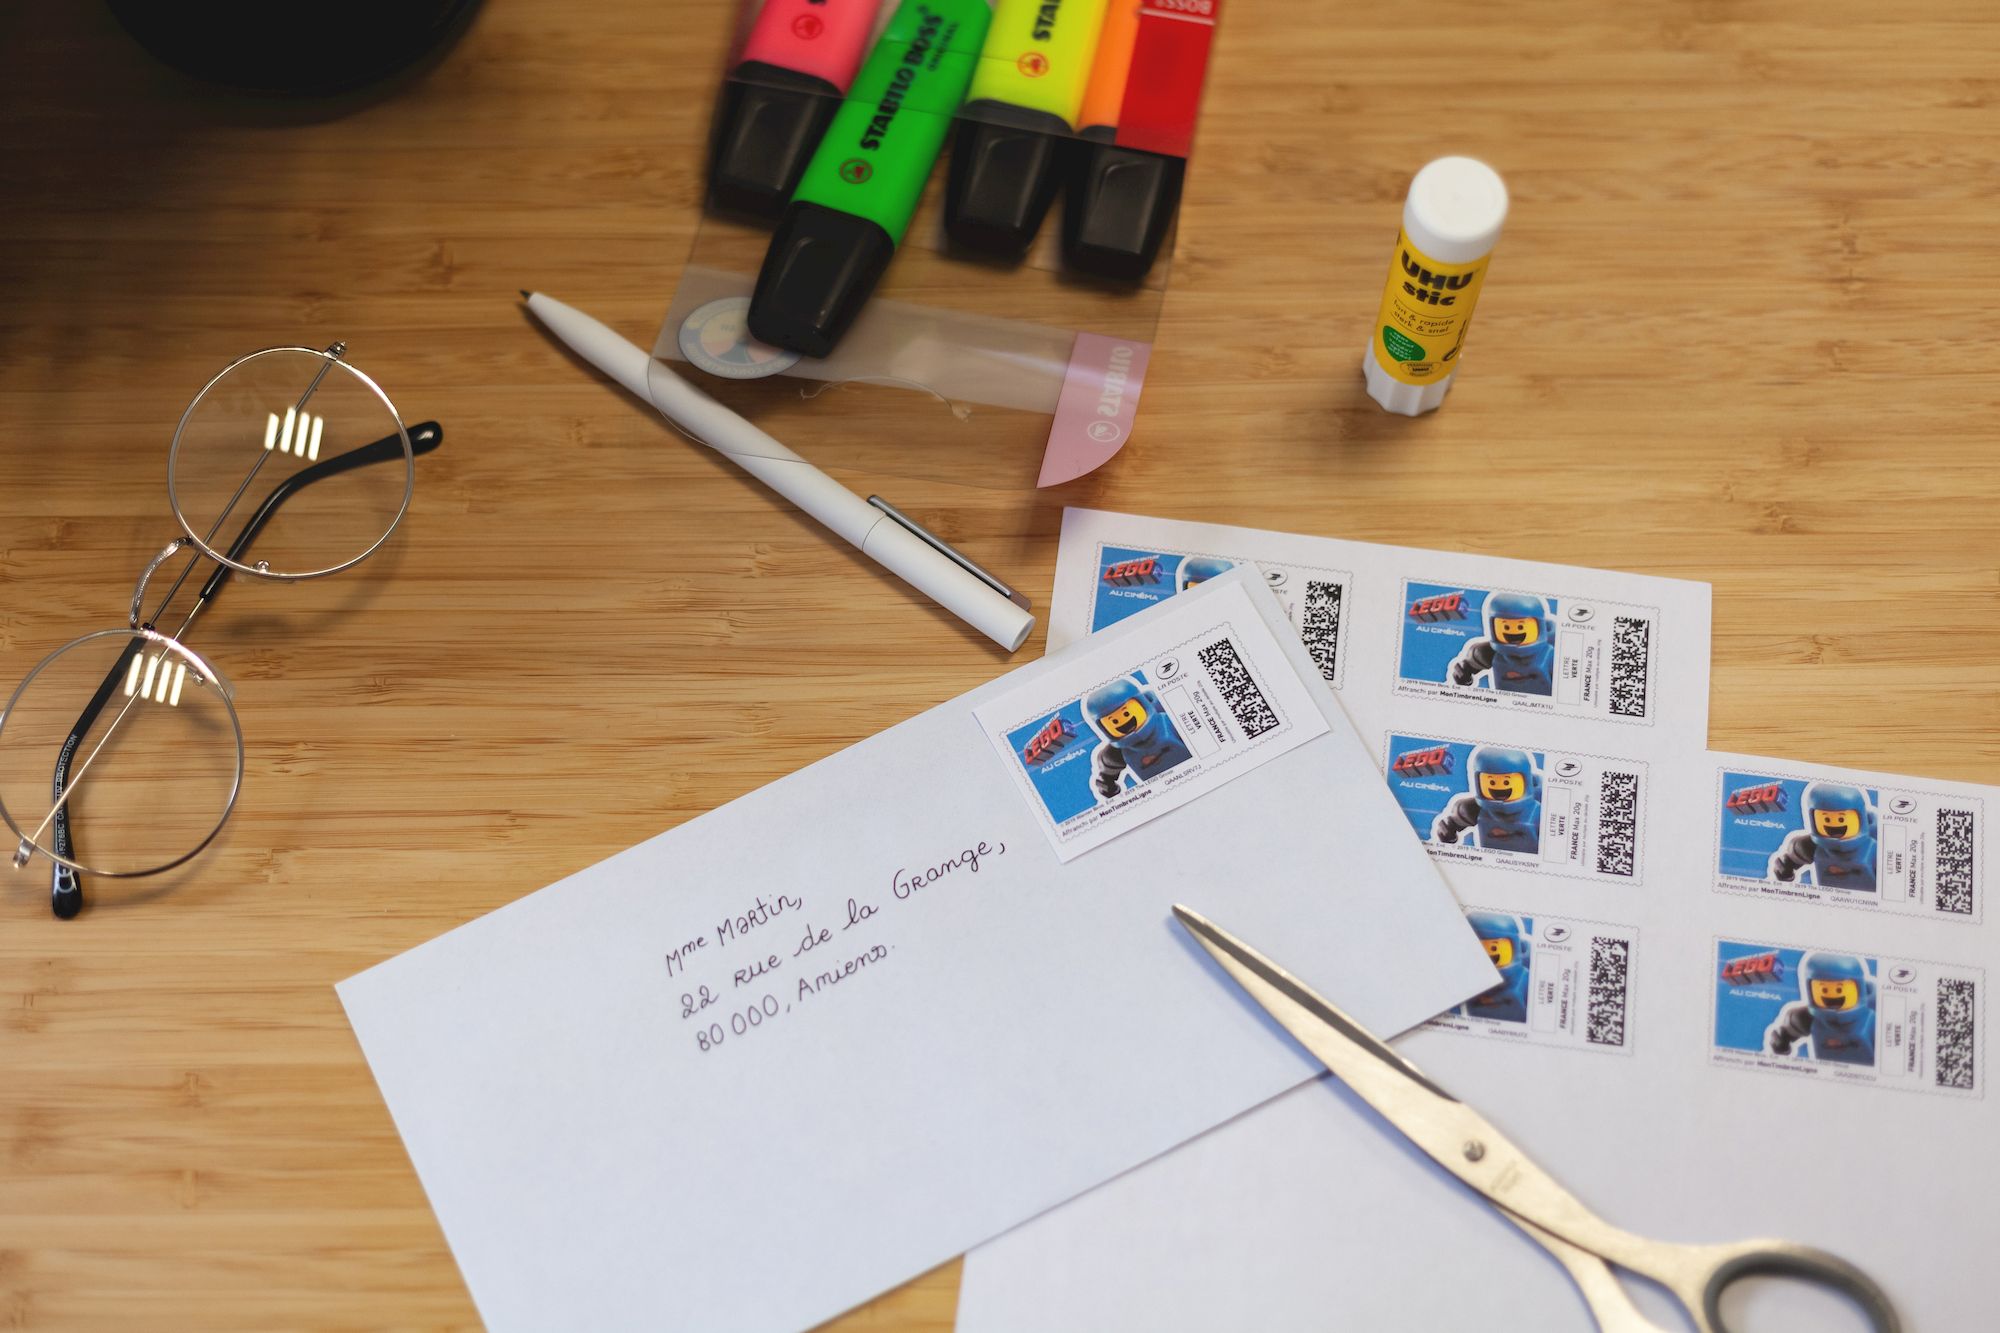 Combien de timbres mettre sur votre enveloppe en fonction de son poids ?